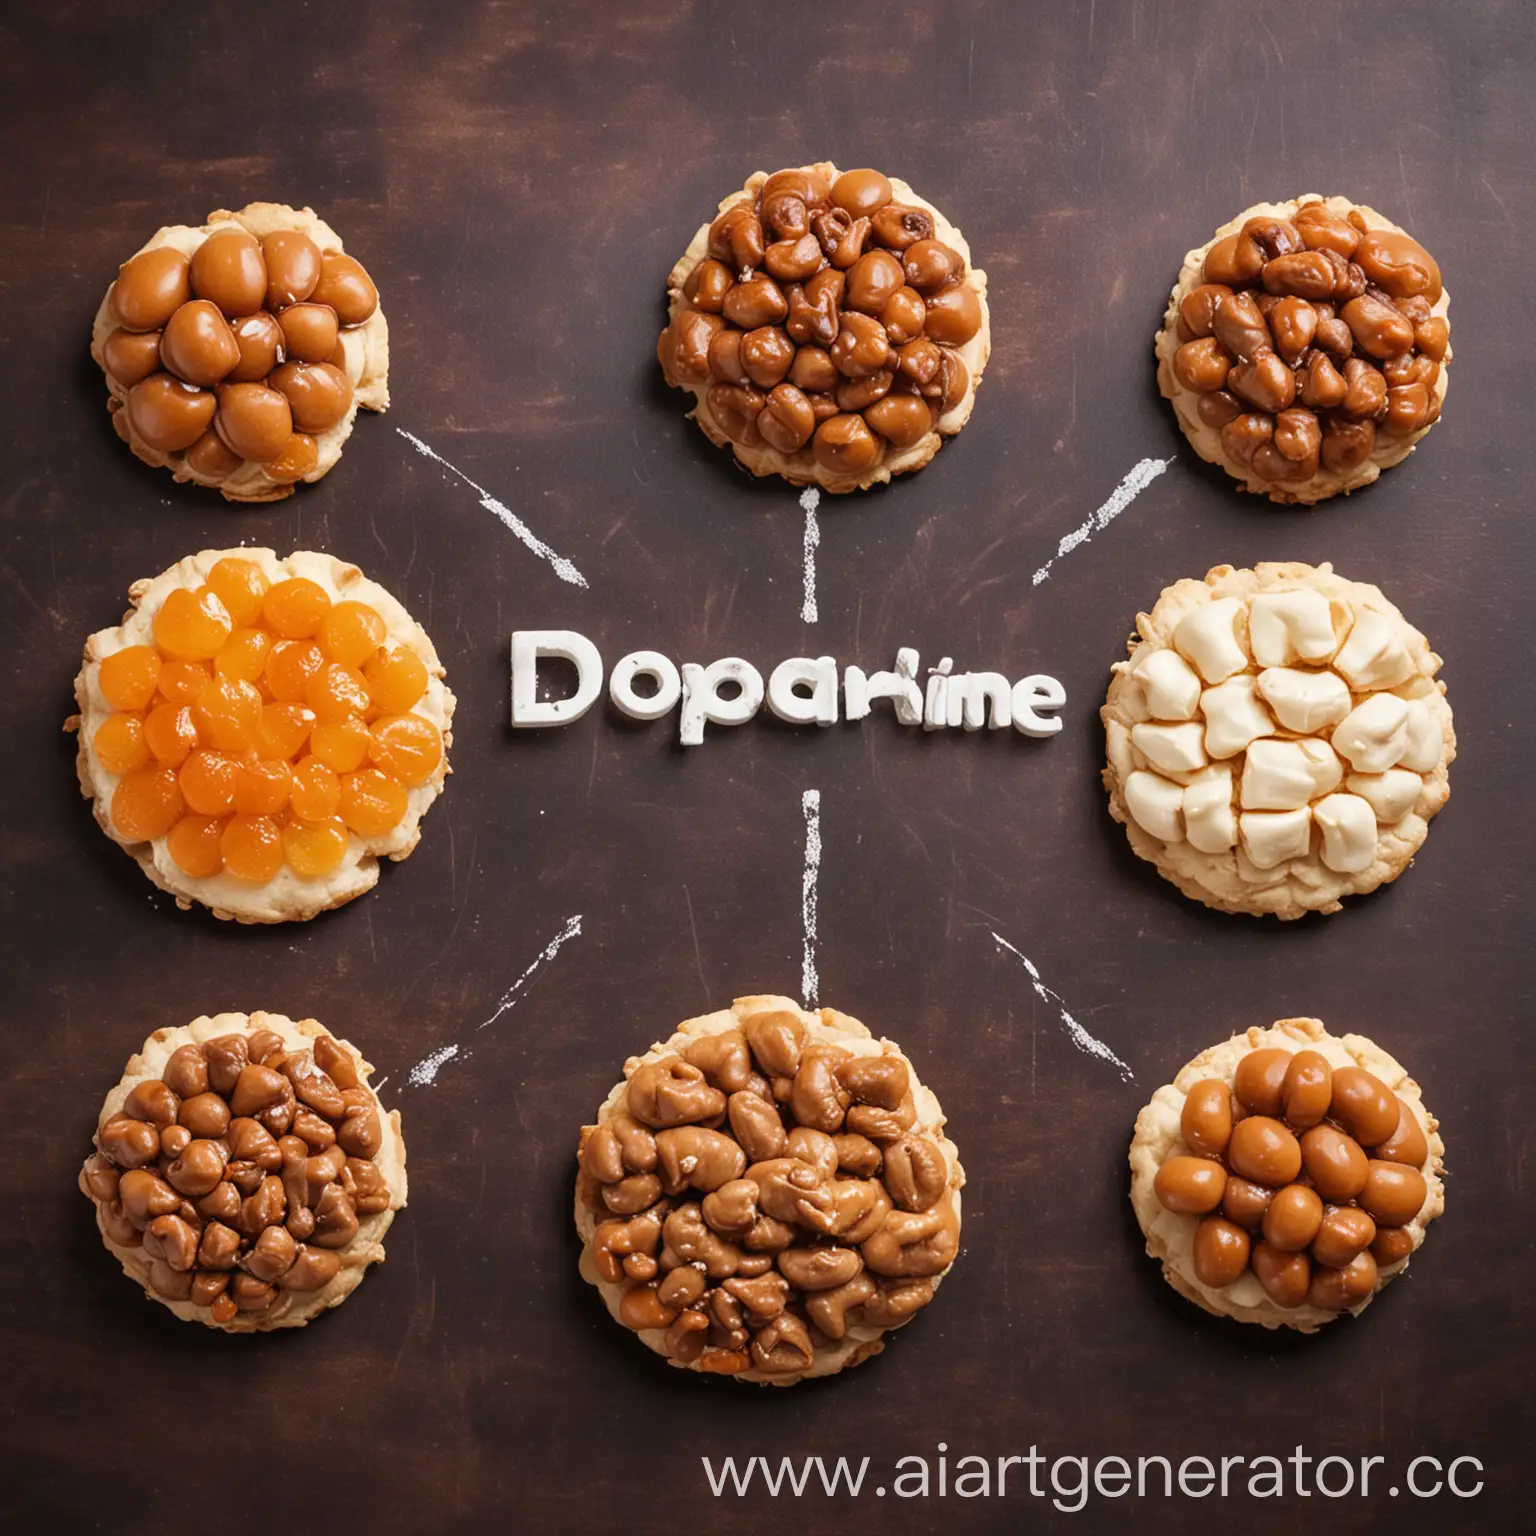 Дофамин в виде аппетитной еды